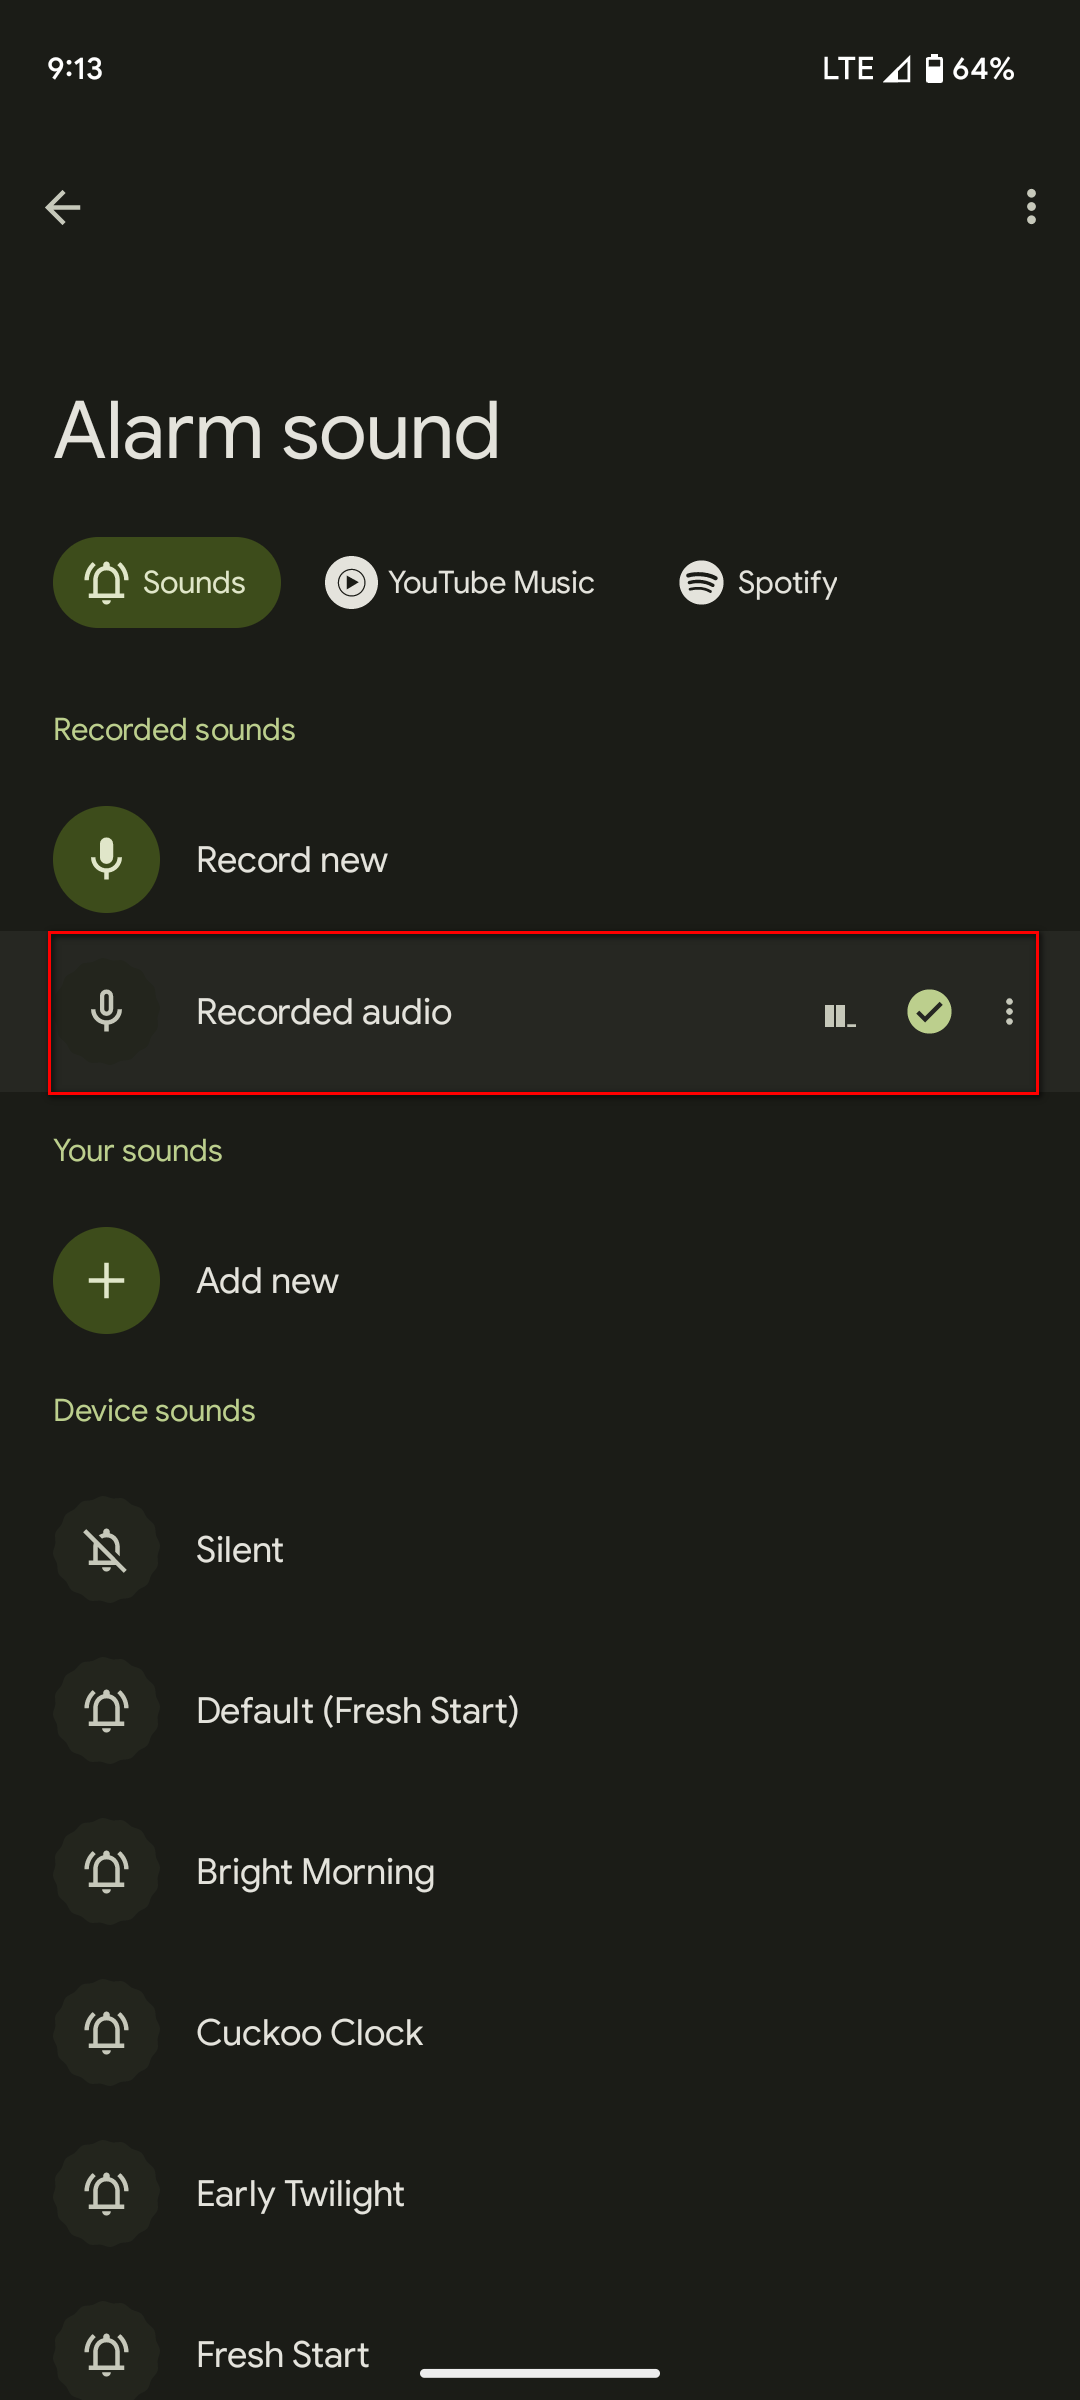 Custom-recorded-audio-alarm-sound-5